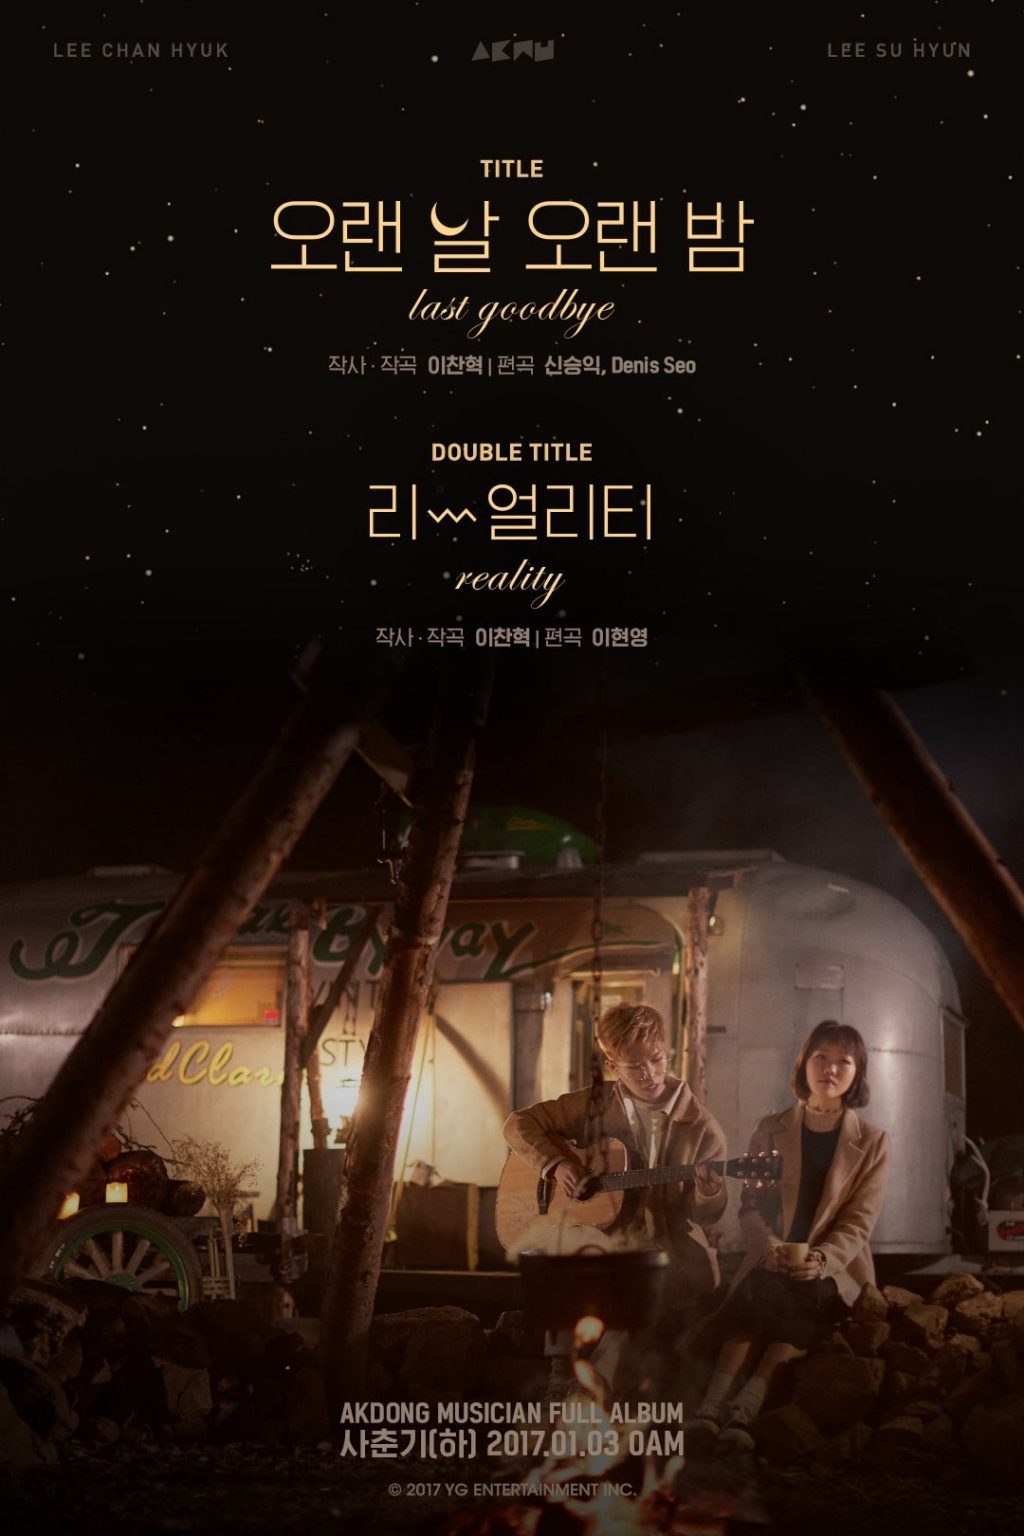 [Релиз] Akdong Musician выпустили новый клип "Last Goodbye"!